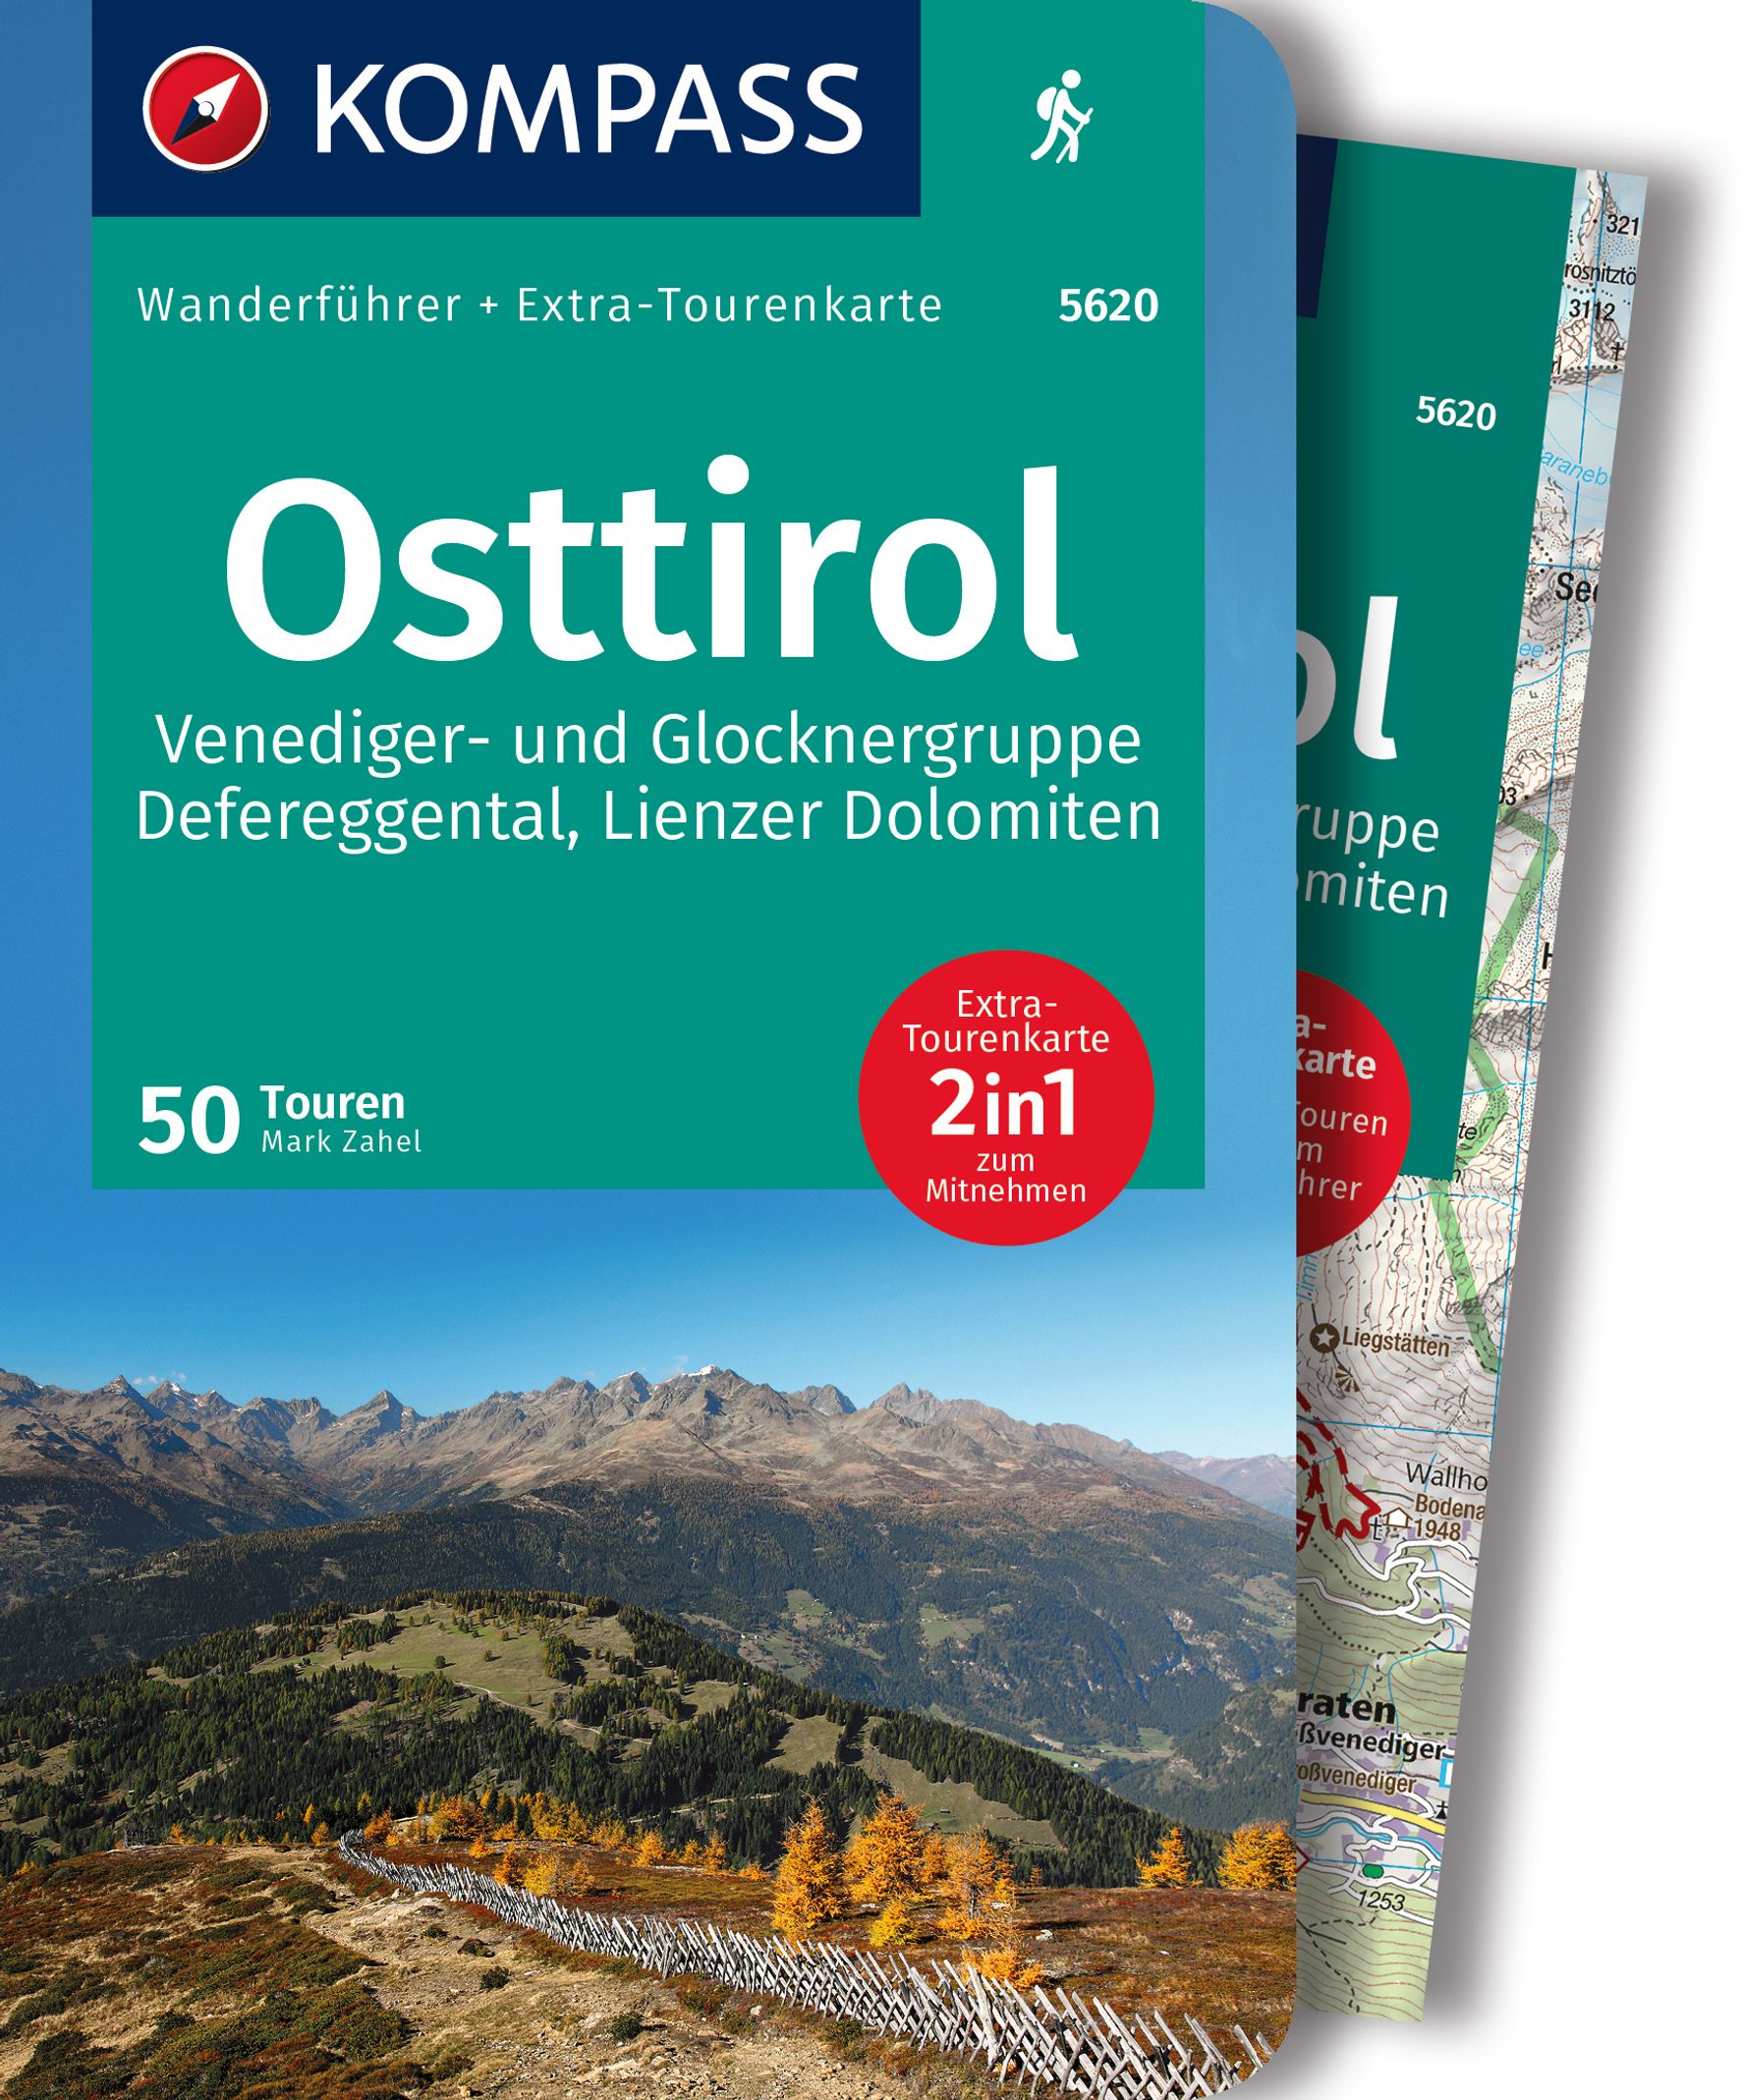 MAIRDUMONT Osttirol, Venediger- und Glocknergruppe, Defereggental, Lienzer Dolomiten, 50 Touren mit Extra-Tourenkarte